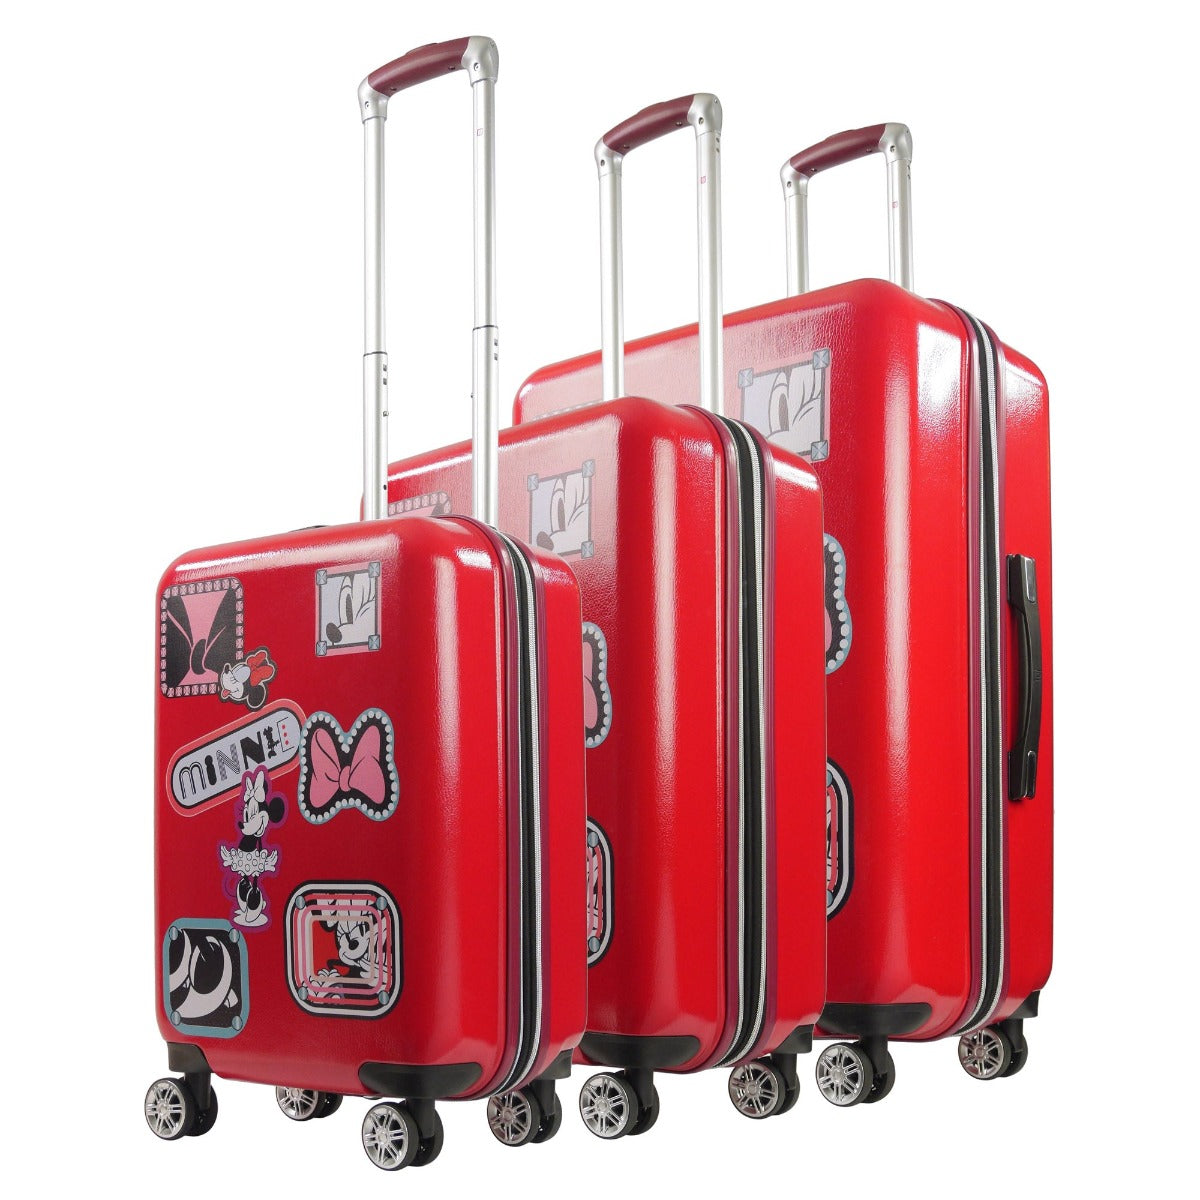 travel luggage set